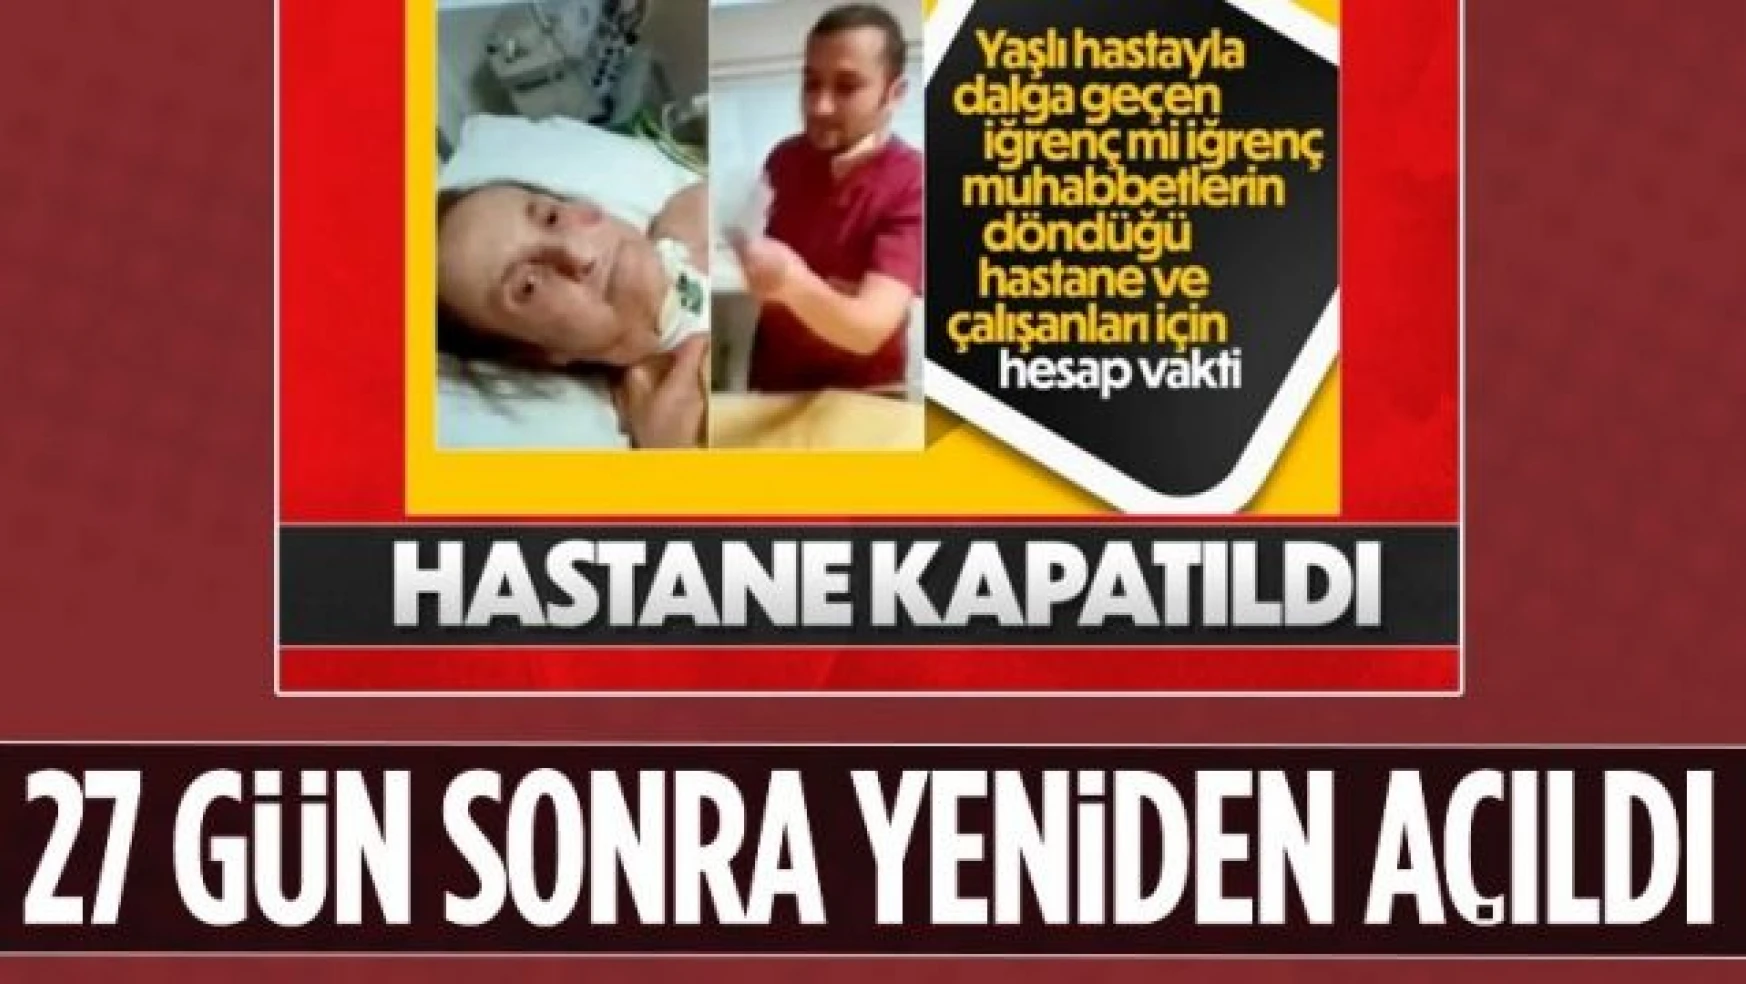 Ataşehir'de yaşlı hastayla dalga geçilmişti: Özel hastane tekrar faaliyette